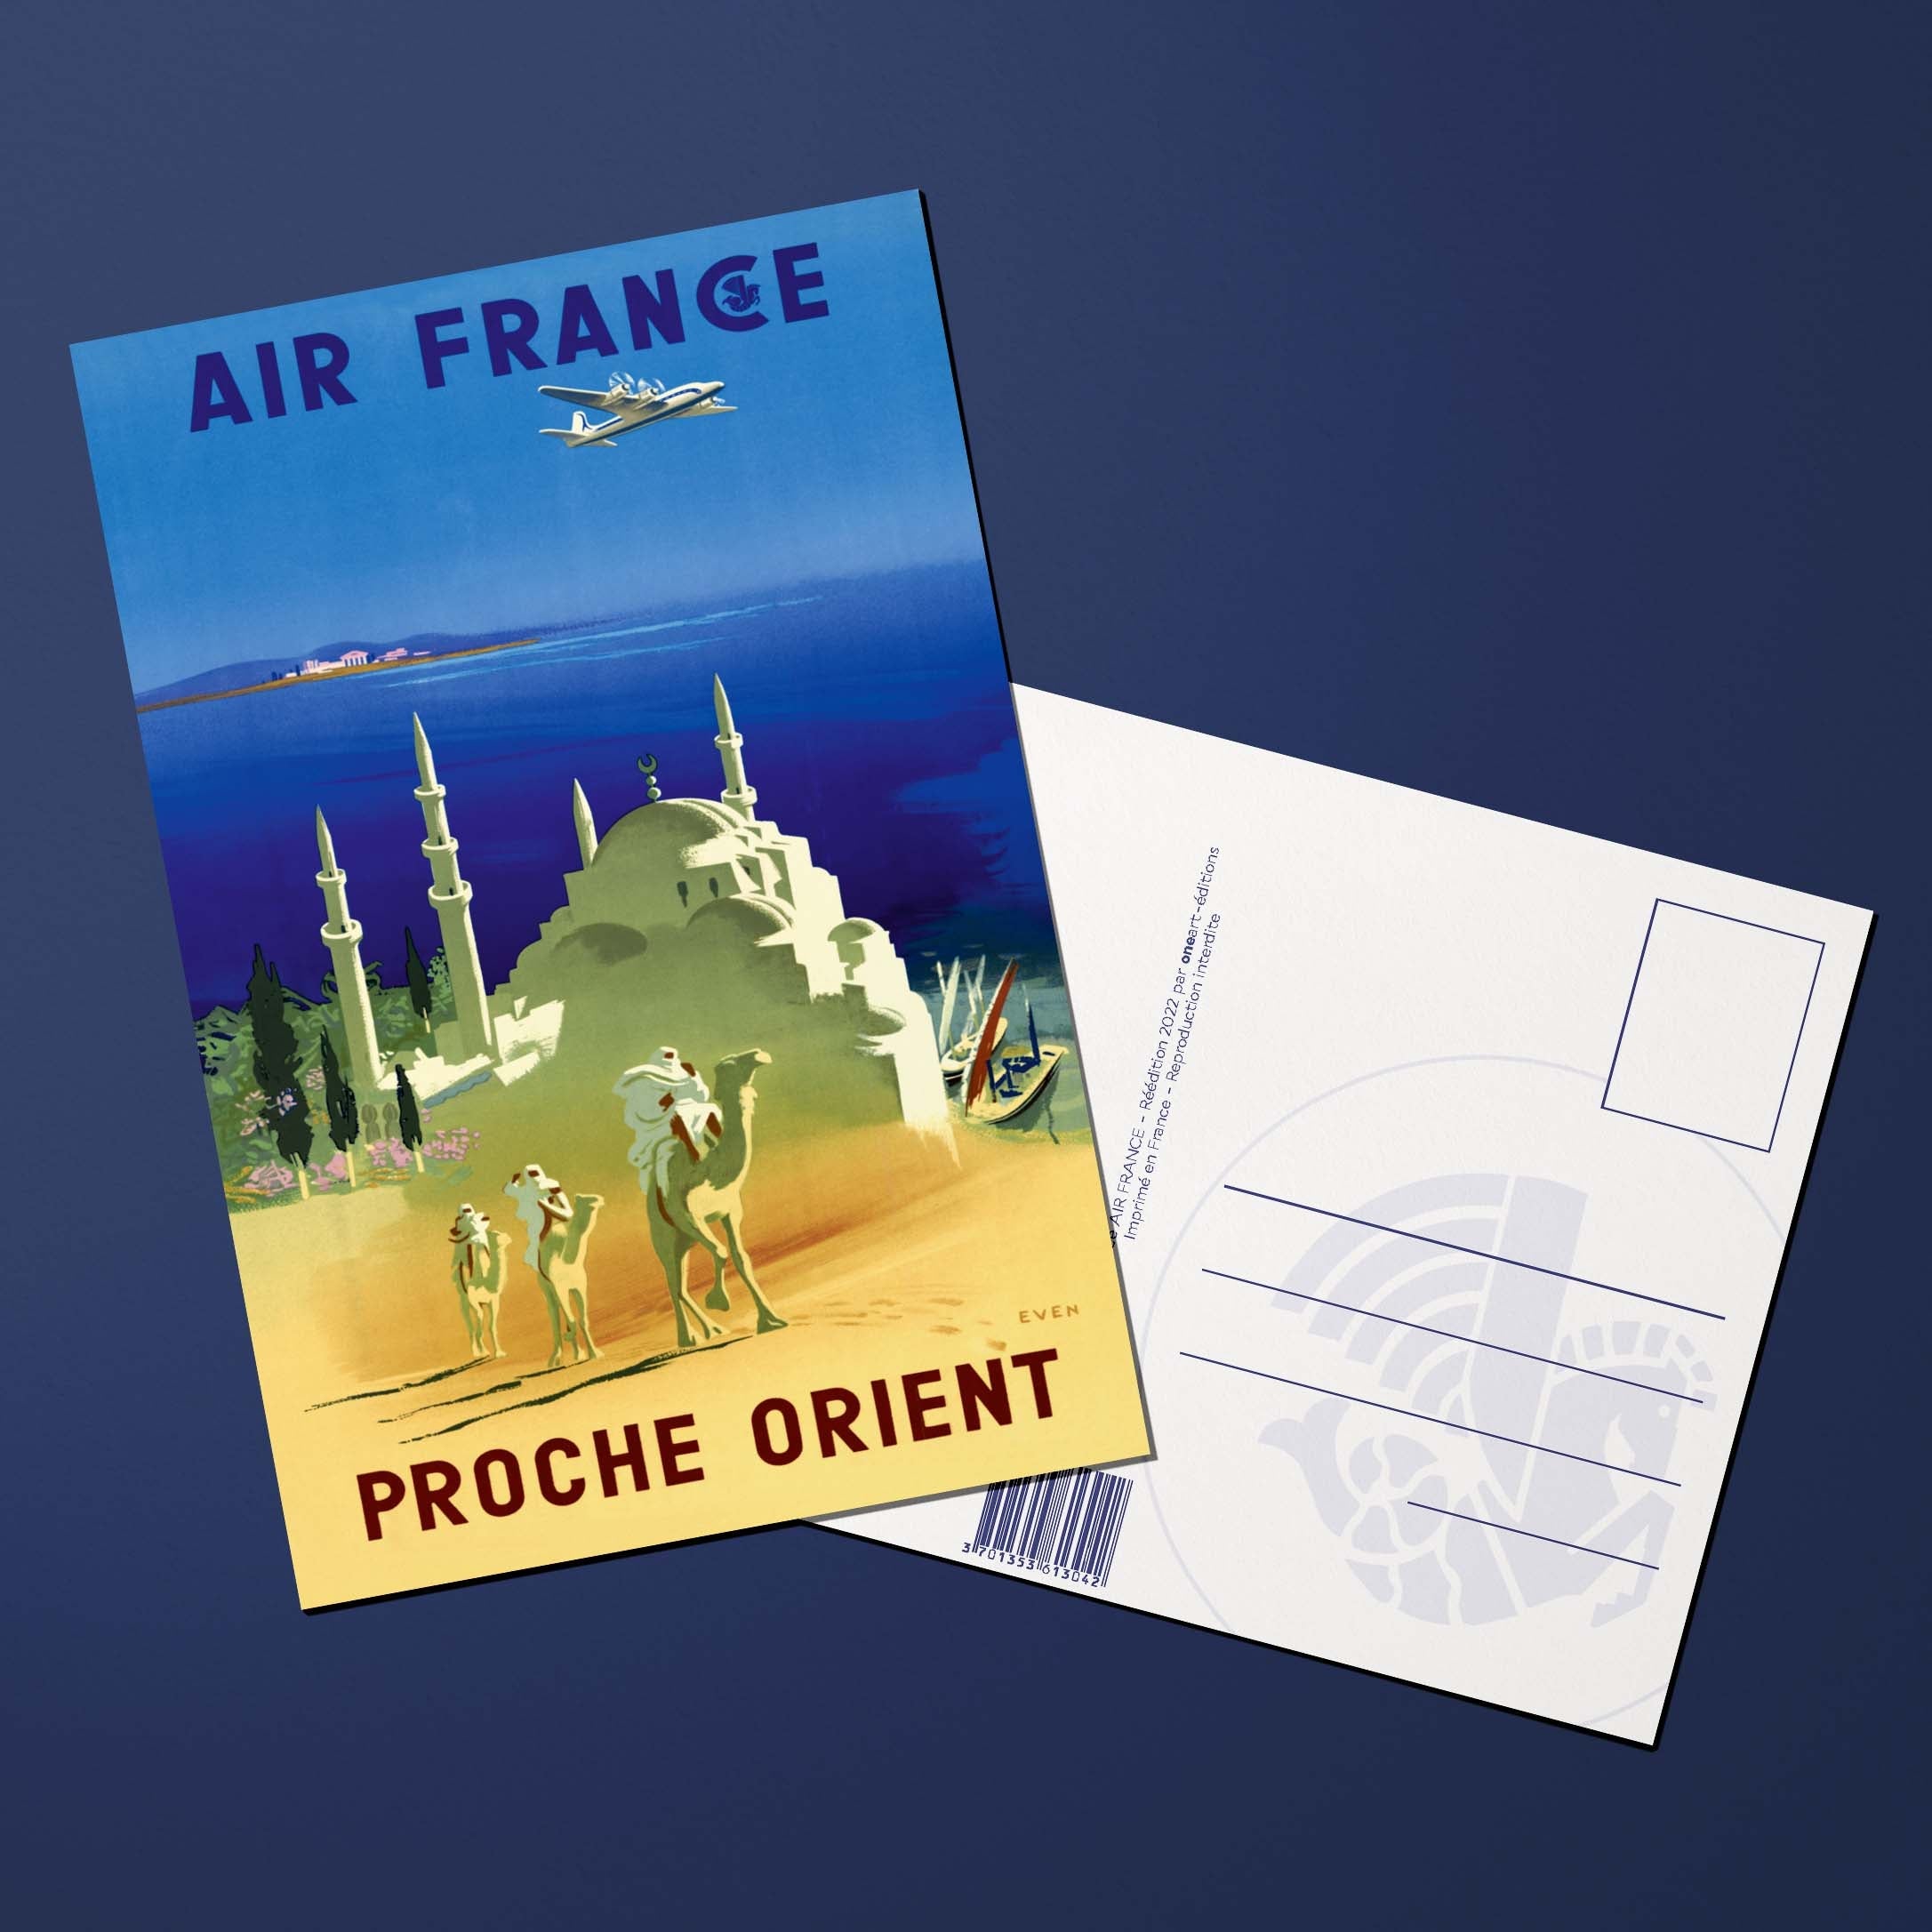 Carte postale Air France Legend Proche Orient, dromadaire